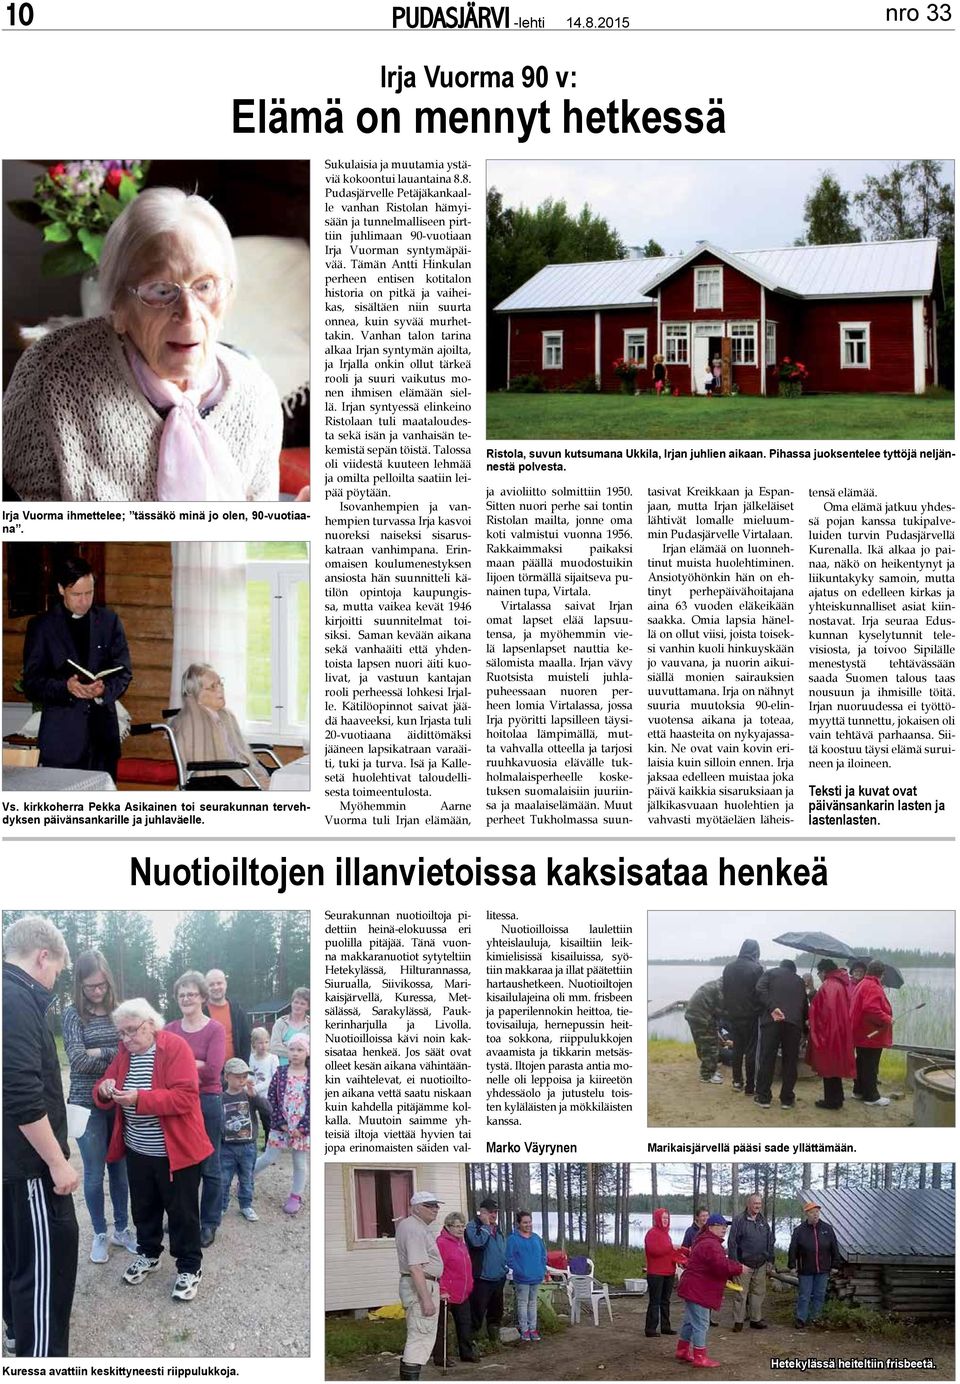 8. udasjärvelle etäjäkankaalle vanhan Ristolan hämyisään ja tunnelmalliseen pirttiin juhlimaan 90-vuotiaan Irja Vuorman syntymäpäivää.